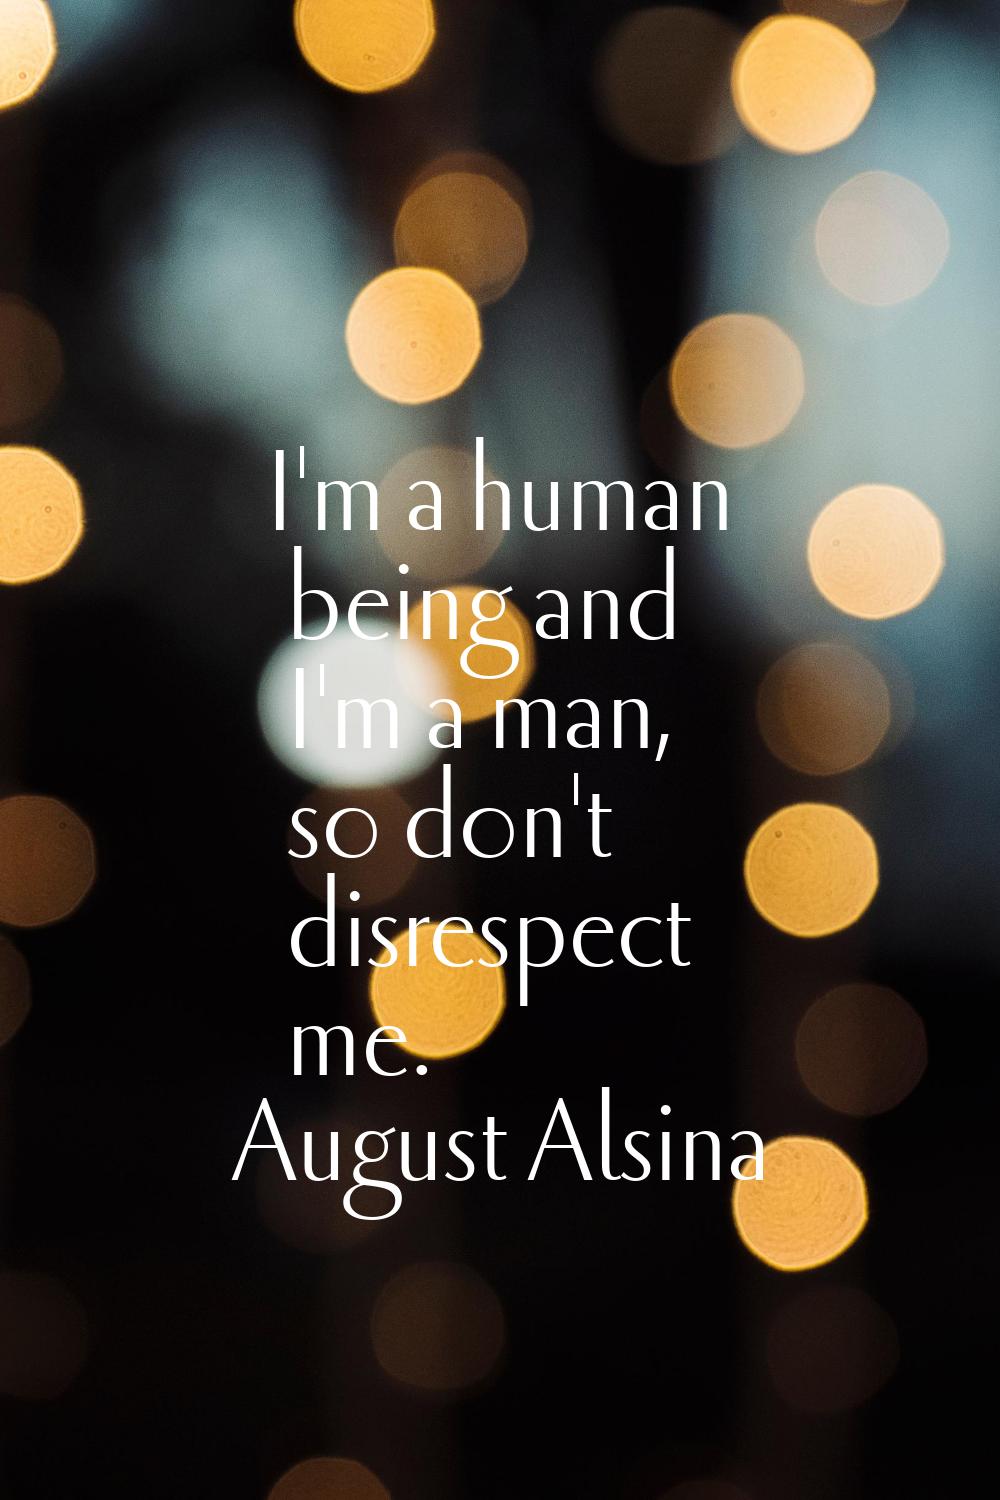 I'm a human being and I'm a man, so don't disrespect me.